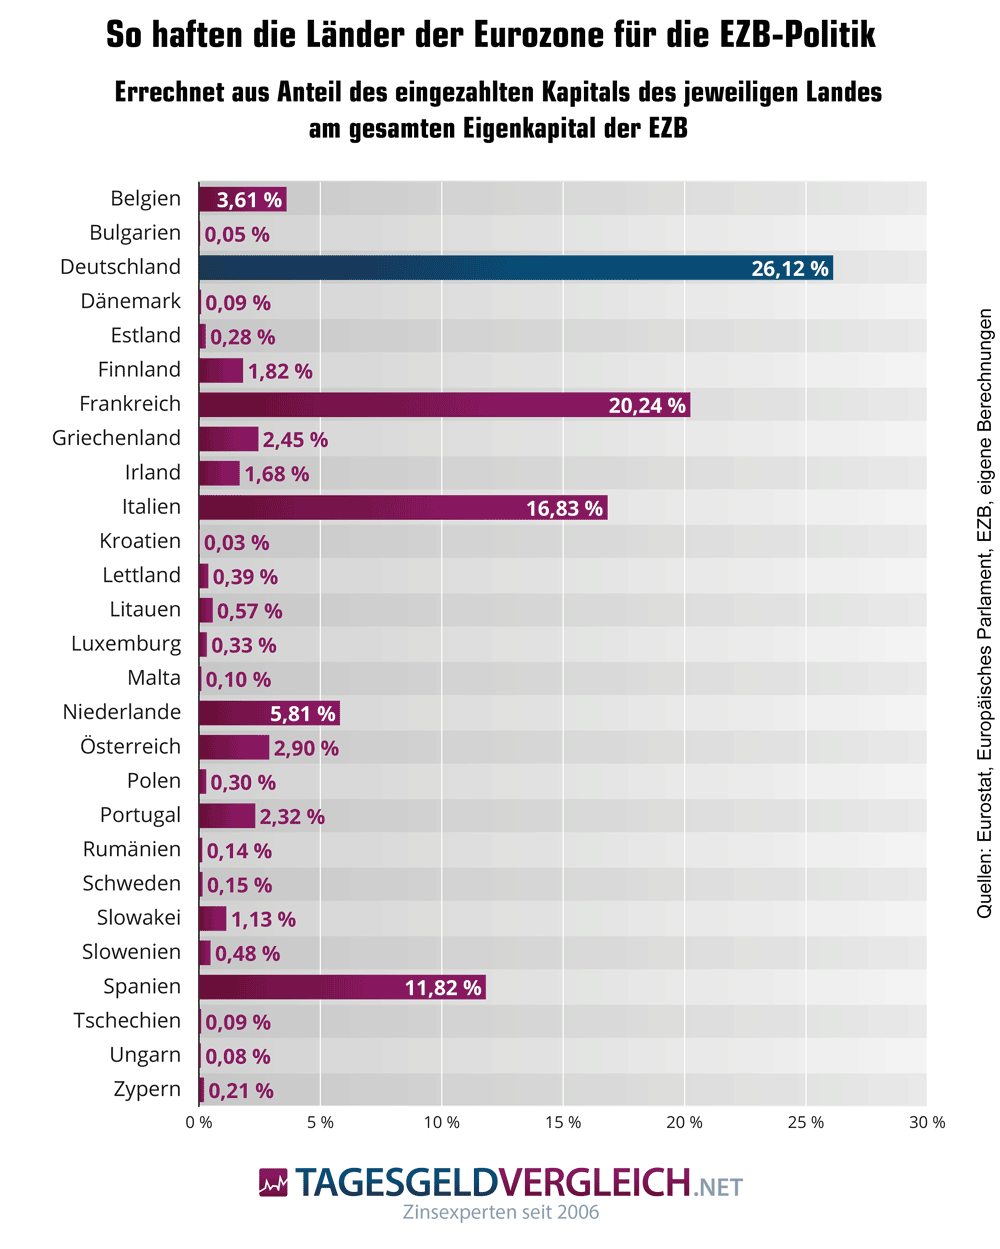 Haftungsanteile der Länder der Eurozone für Anleihekäufe der EZB